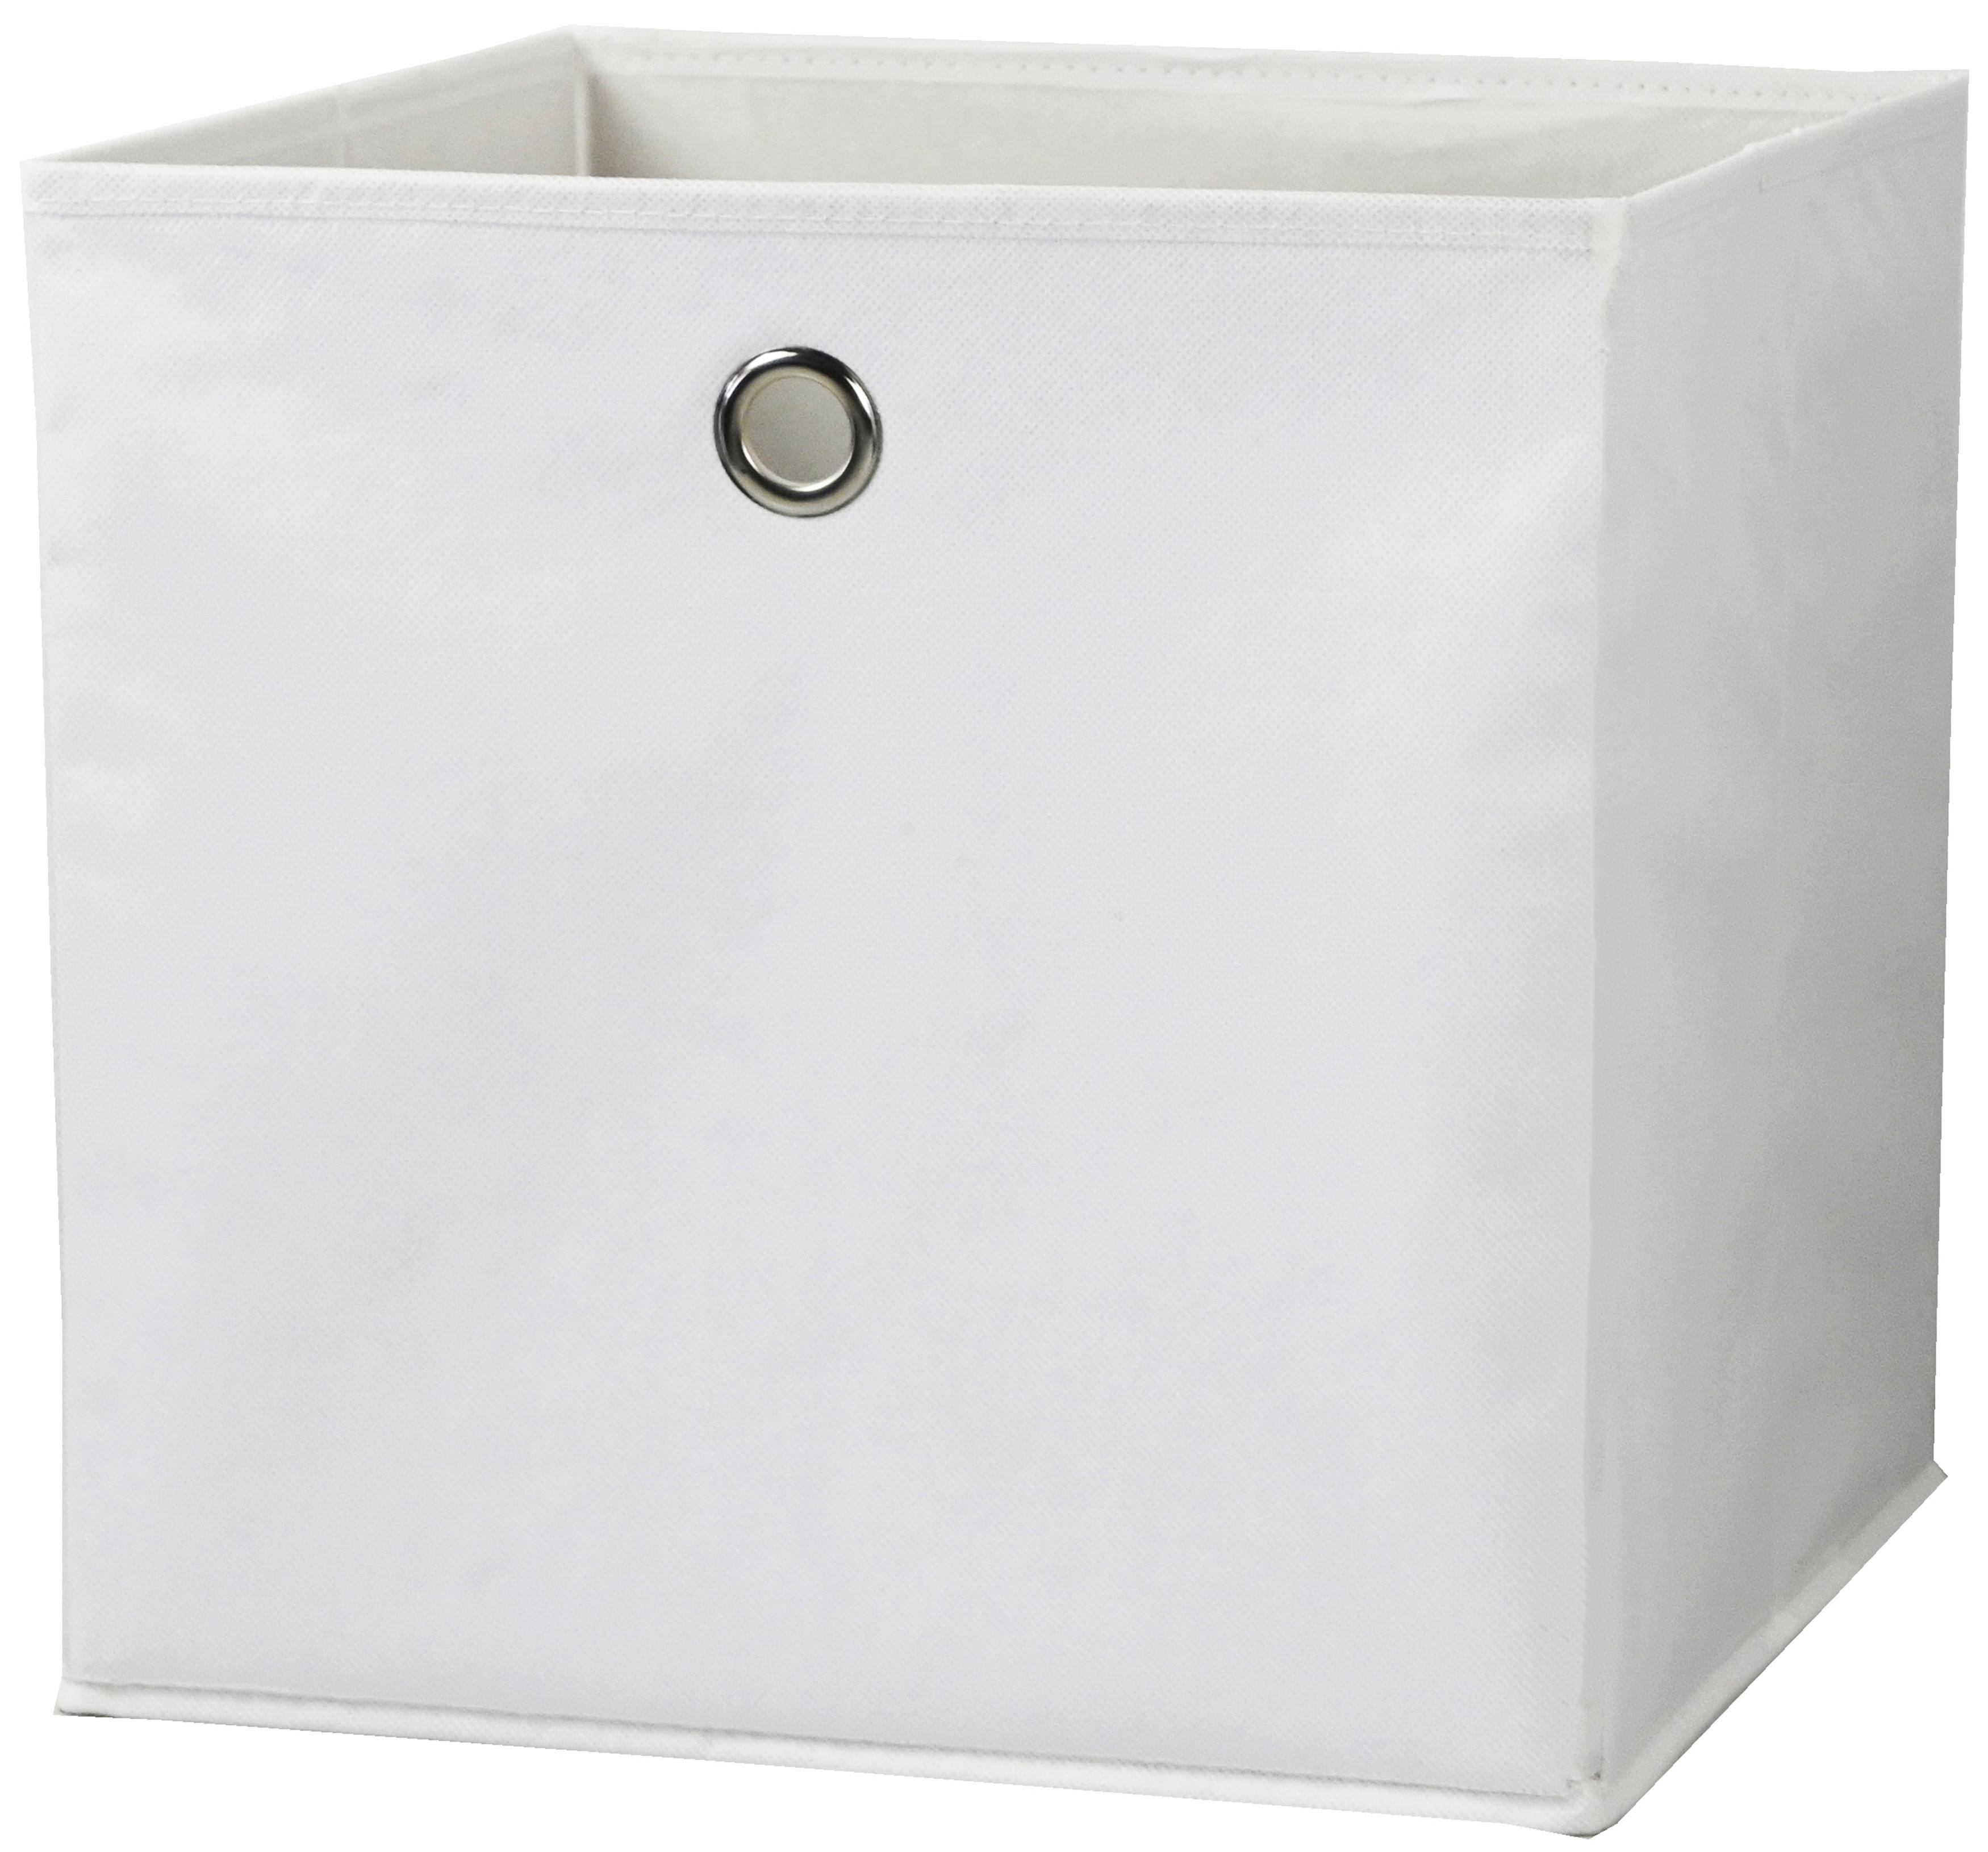 Skladací Box Fibi, 30/30/30cm - biela, Konvenčný, kartón/textil (30/30/30cm) - Modern Living